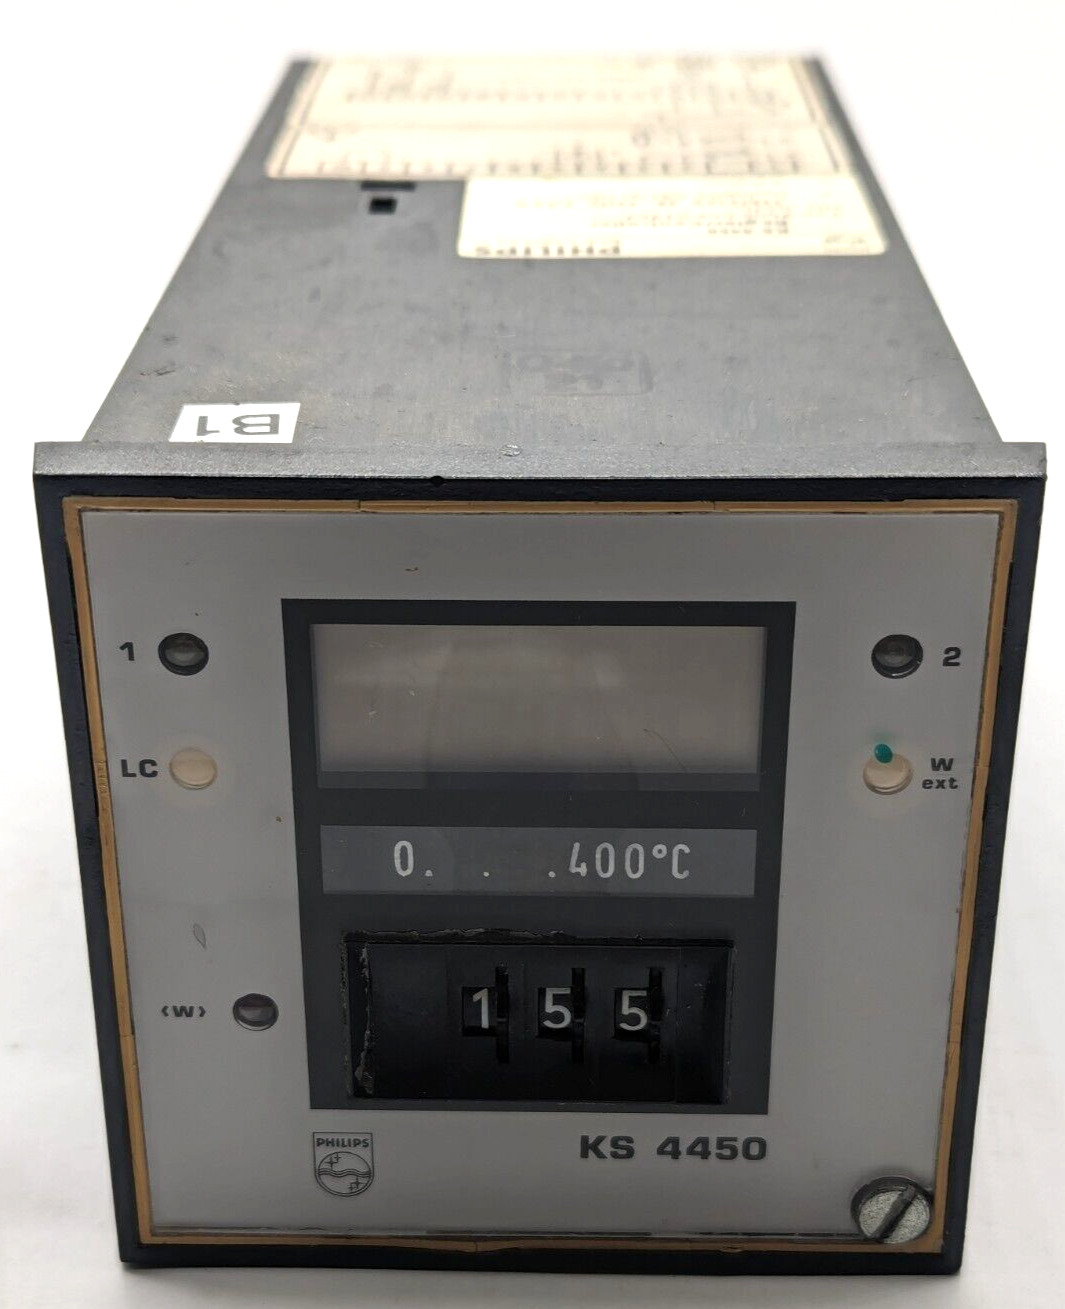 Philips KS 4450 Temperature Controller Type 9404 446 01751